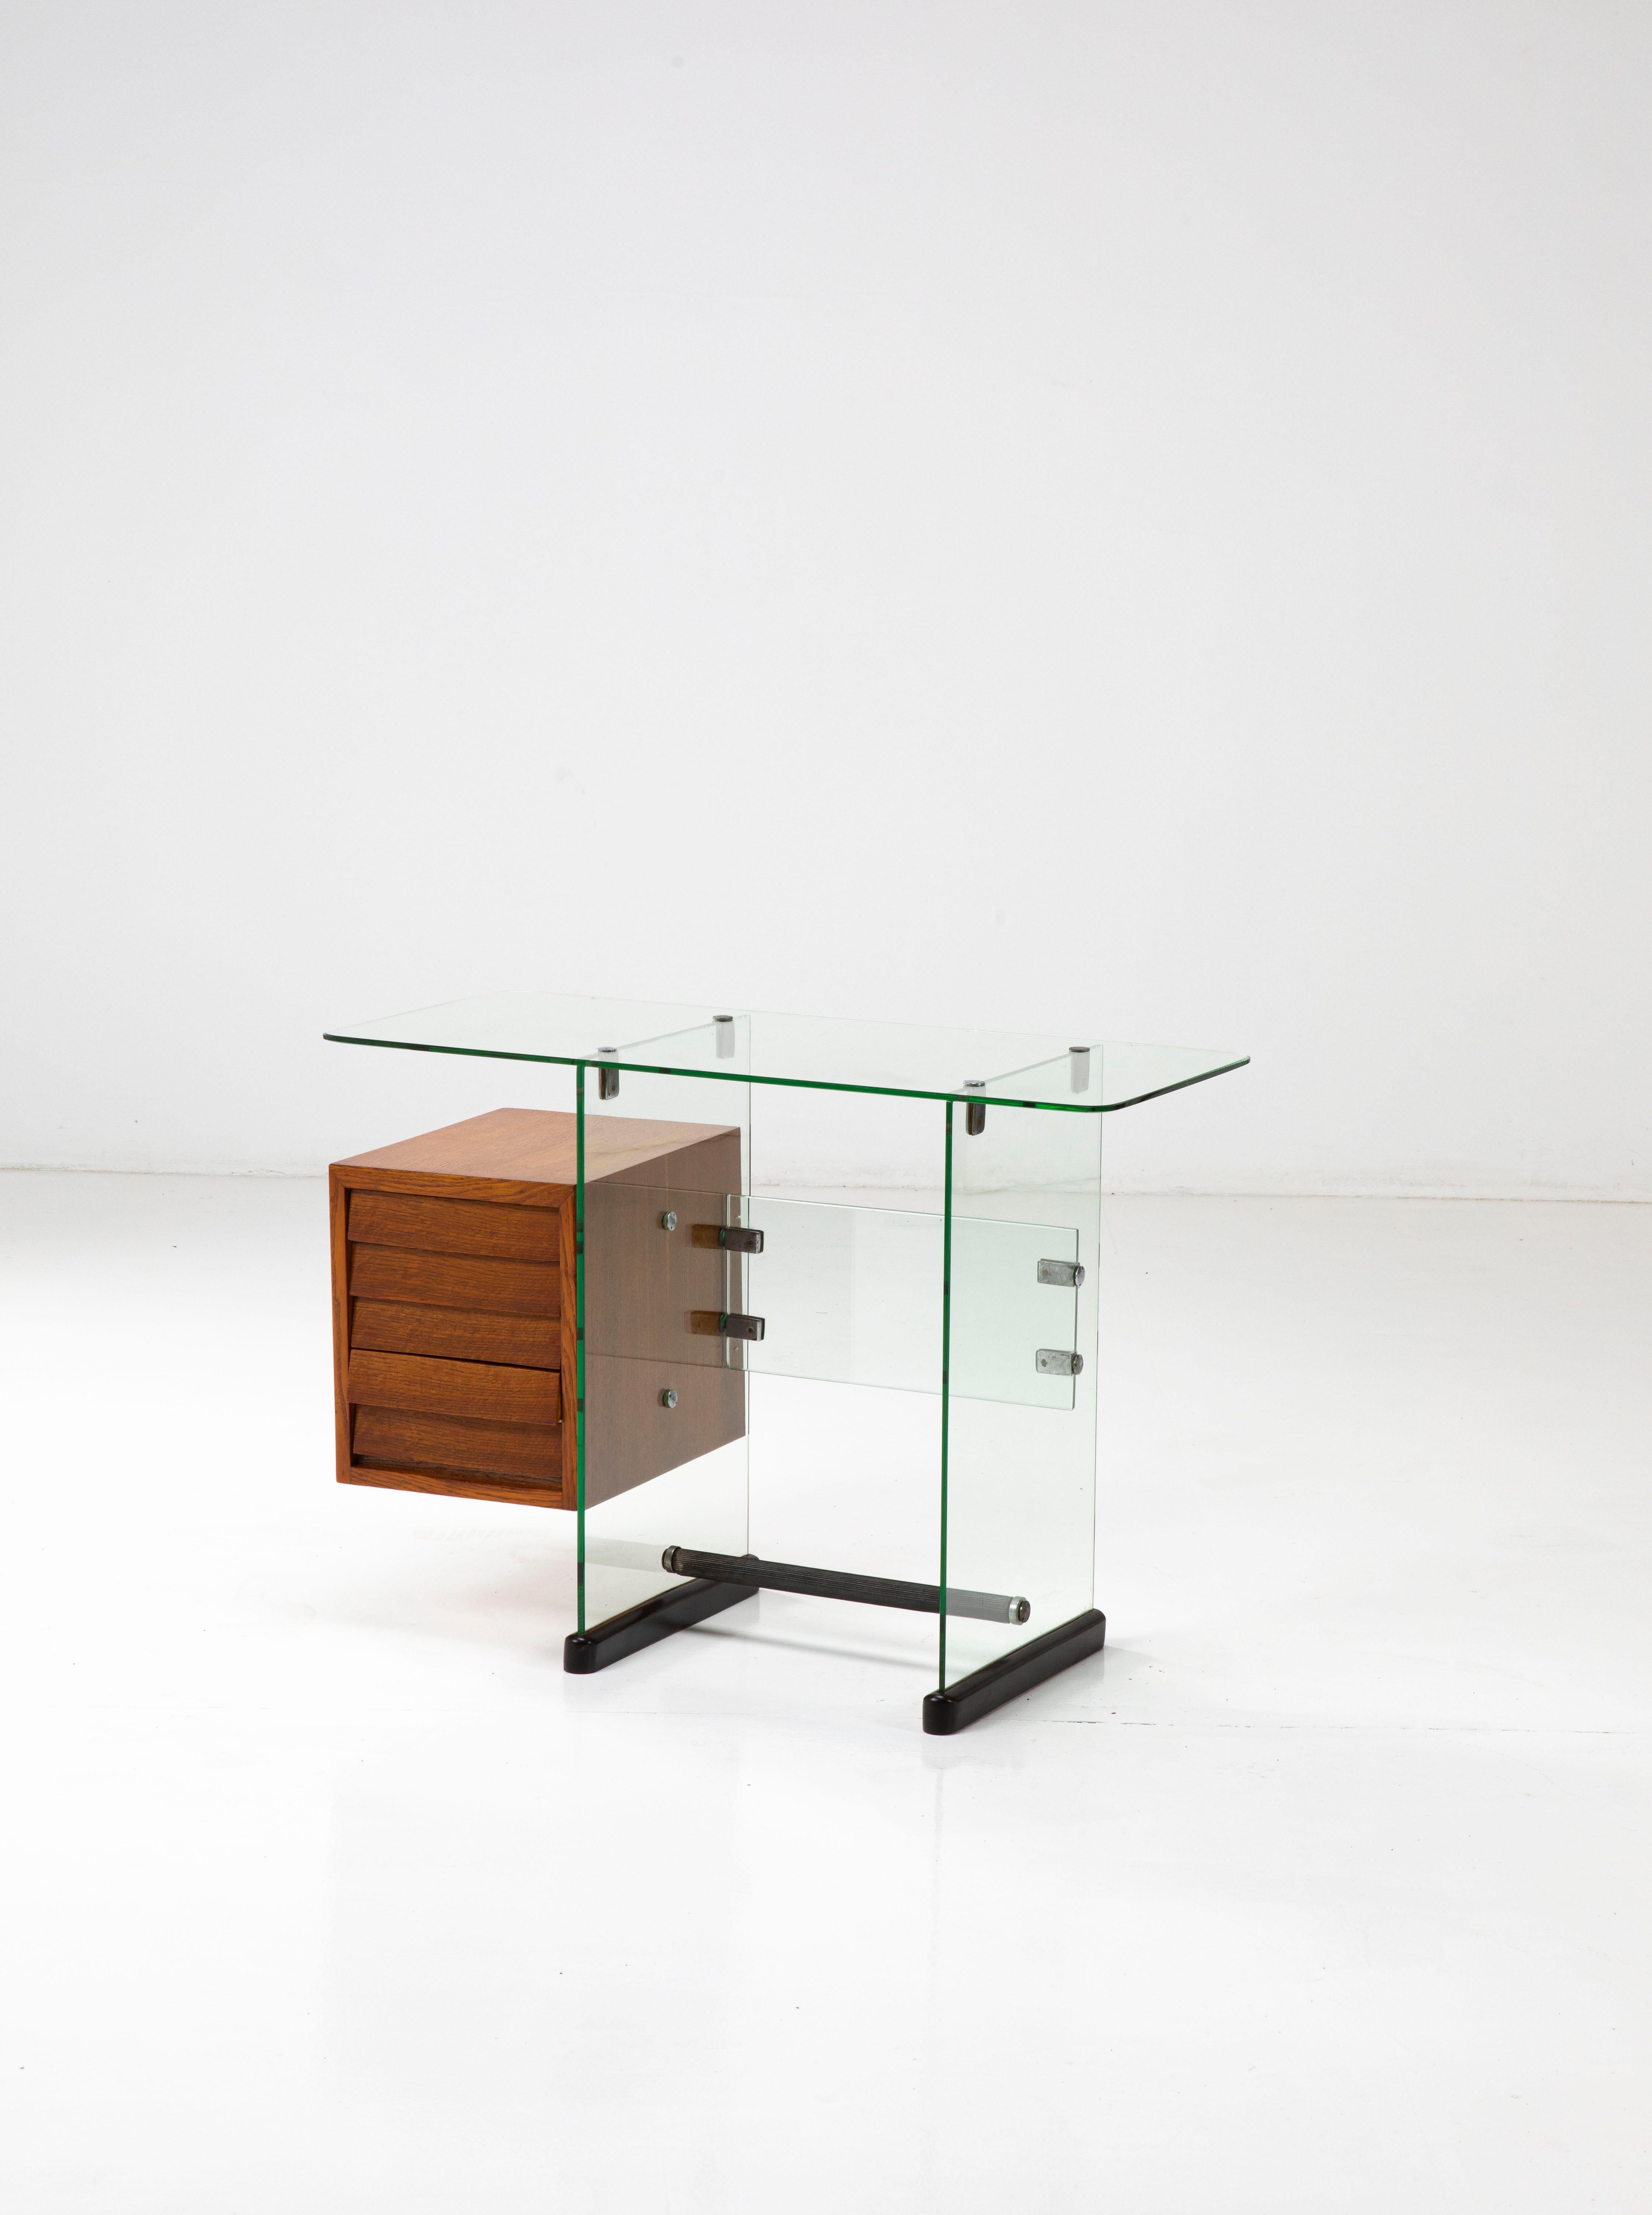 Cet élégant petit bureau est composé de vitres en verre trempé reliées par des jonctions en laiton et en métal et d'une commode en bois, tout comme les deux bases sont en bois. 

La conception de cette pièce est liée à d'autres meubles de bureau